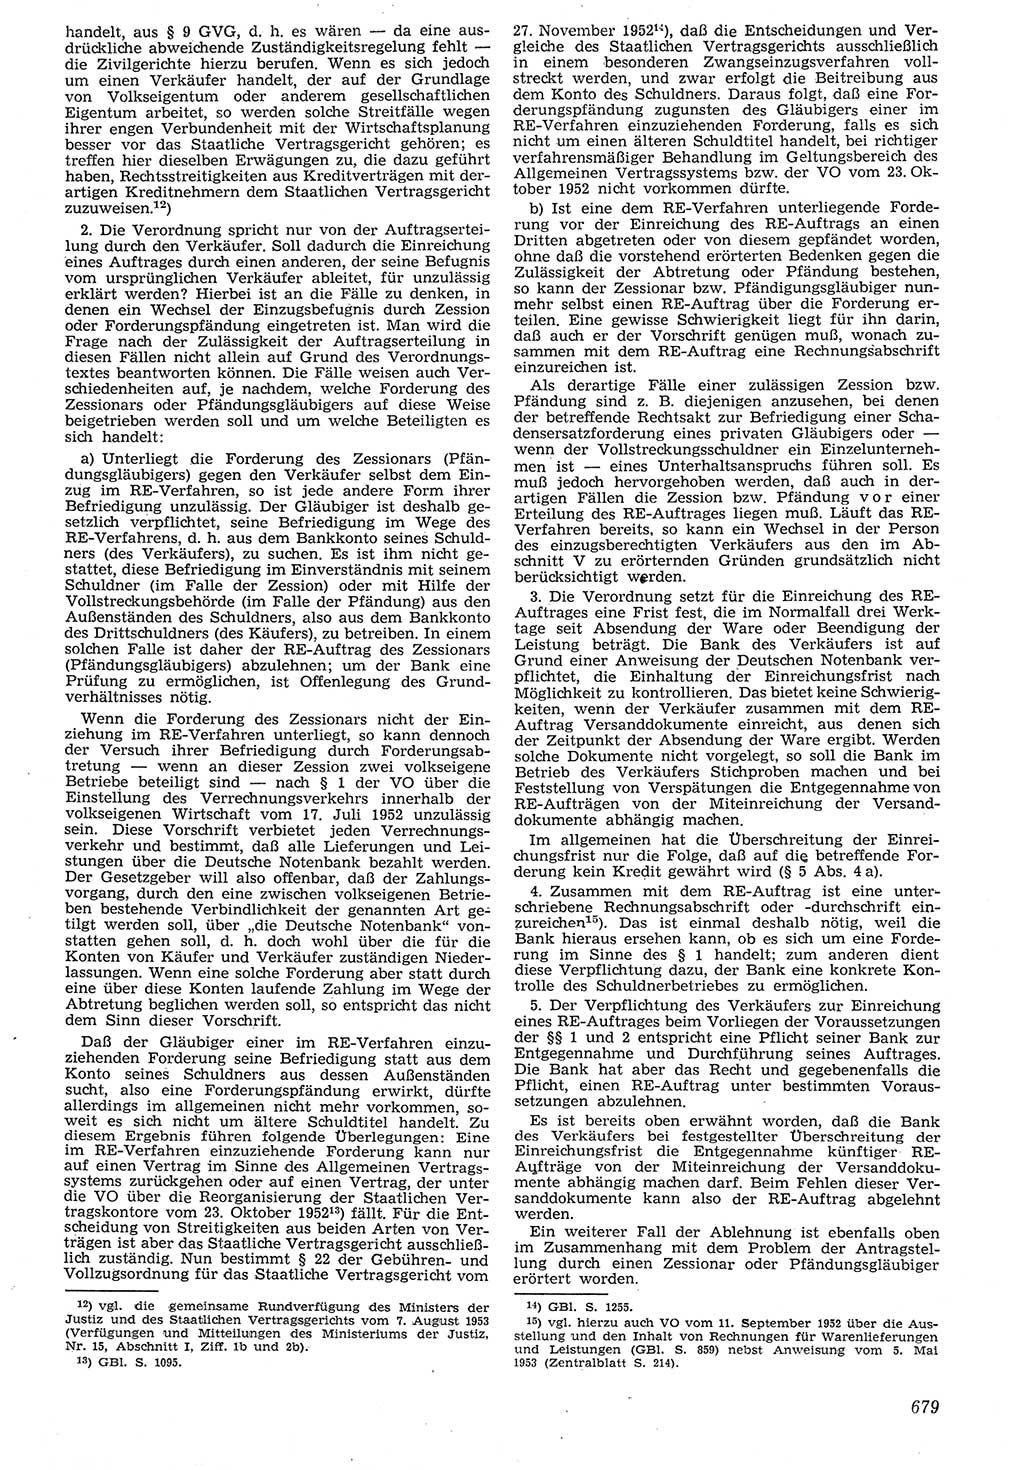 Neue Justiz (NJ), Zeitschrift für Recht und Rechtswissenschaft [Deutsche Demokratische Republik (DDR)], 7. Jahrgang 1953, Seite 679 (NJ DDR 1953, S. 679)